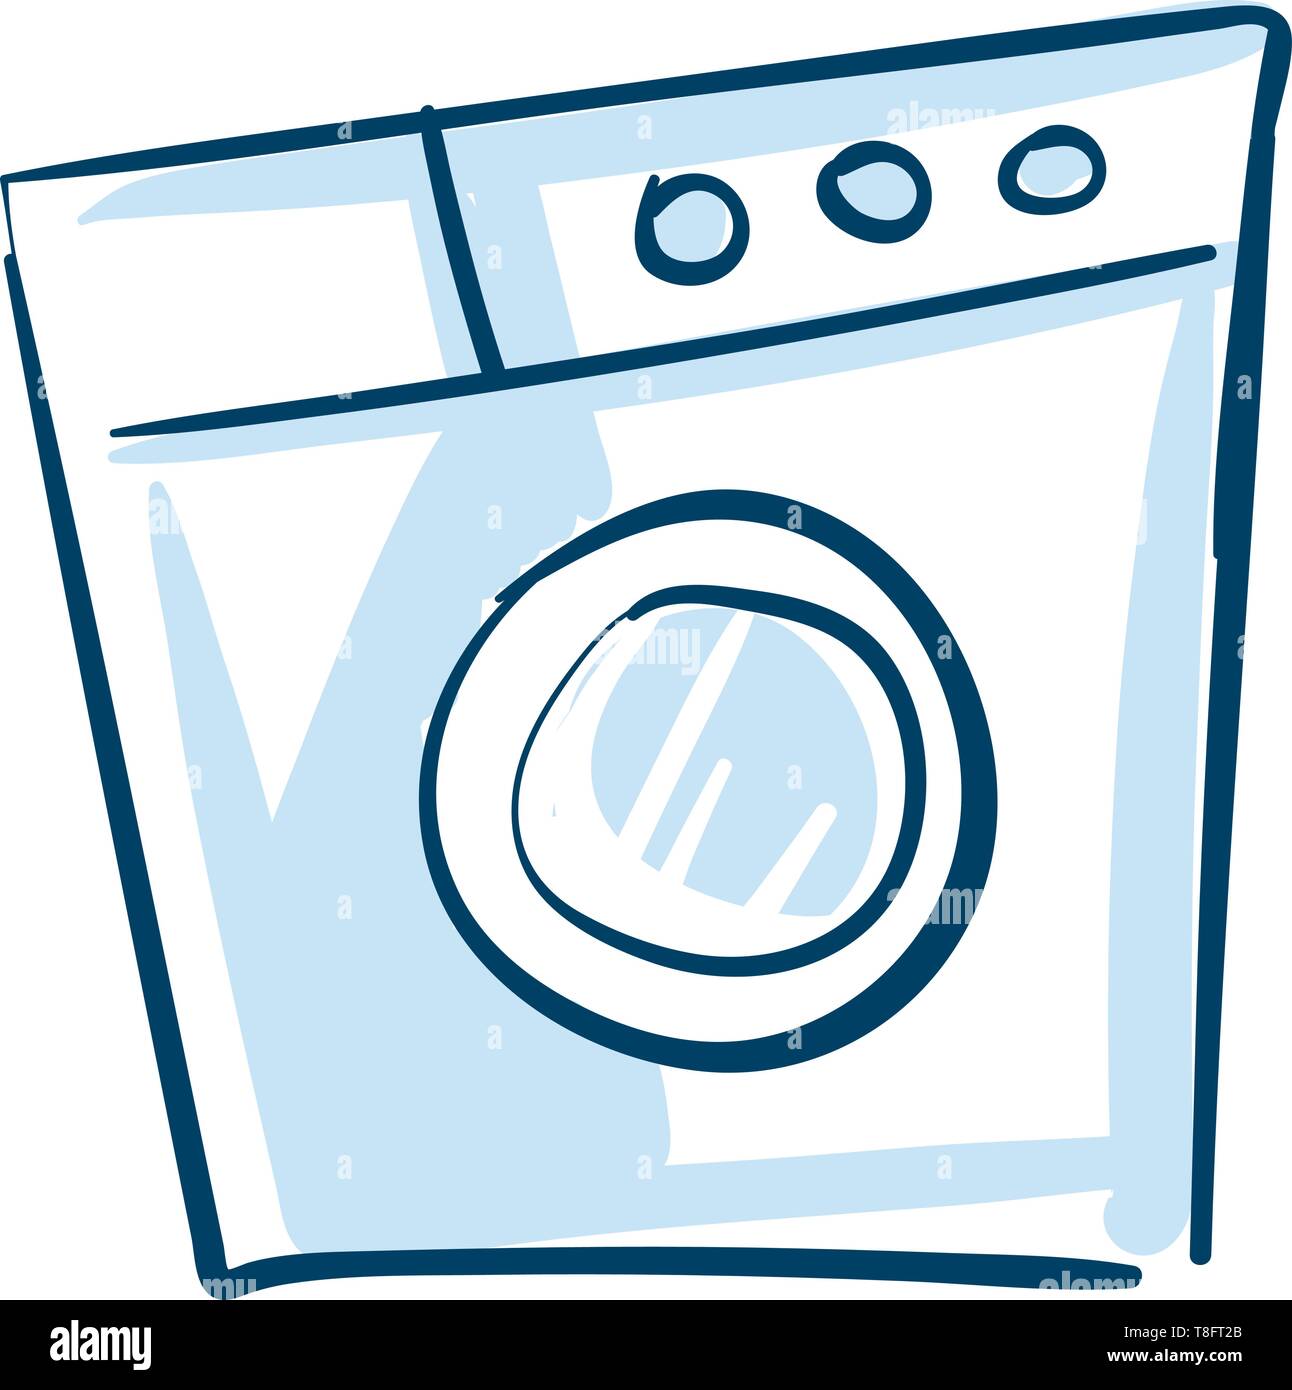 Waschmaschine, einen Haushalt elektronische Geräte mit speziellen Waschprogramme und ein Knopf zum Wäsche Waschen und Trocknen mit einem problemlosen waschen Leistung, Stock Vektor